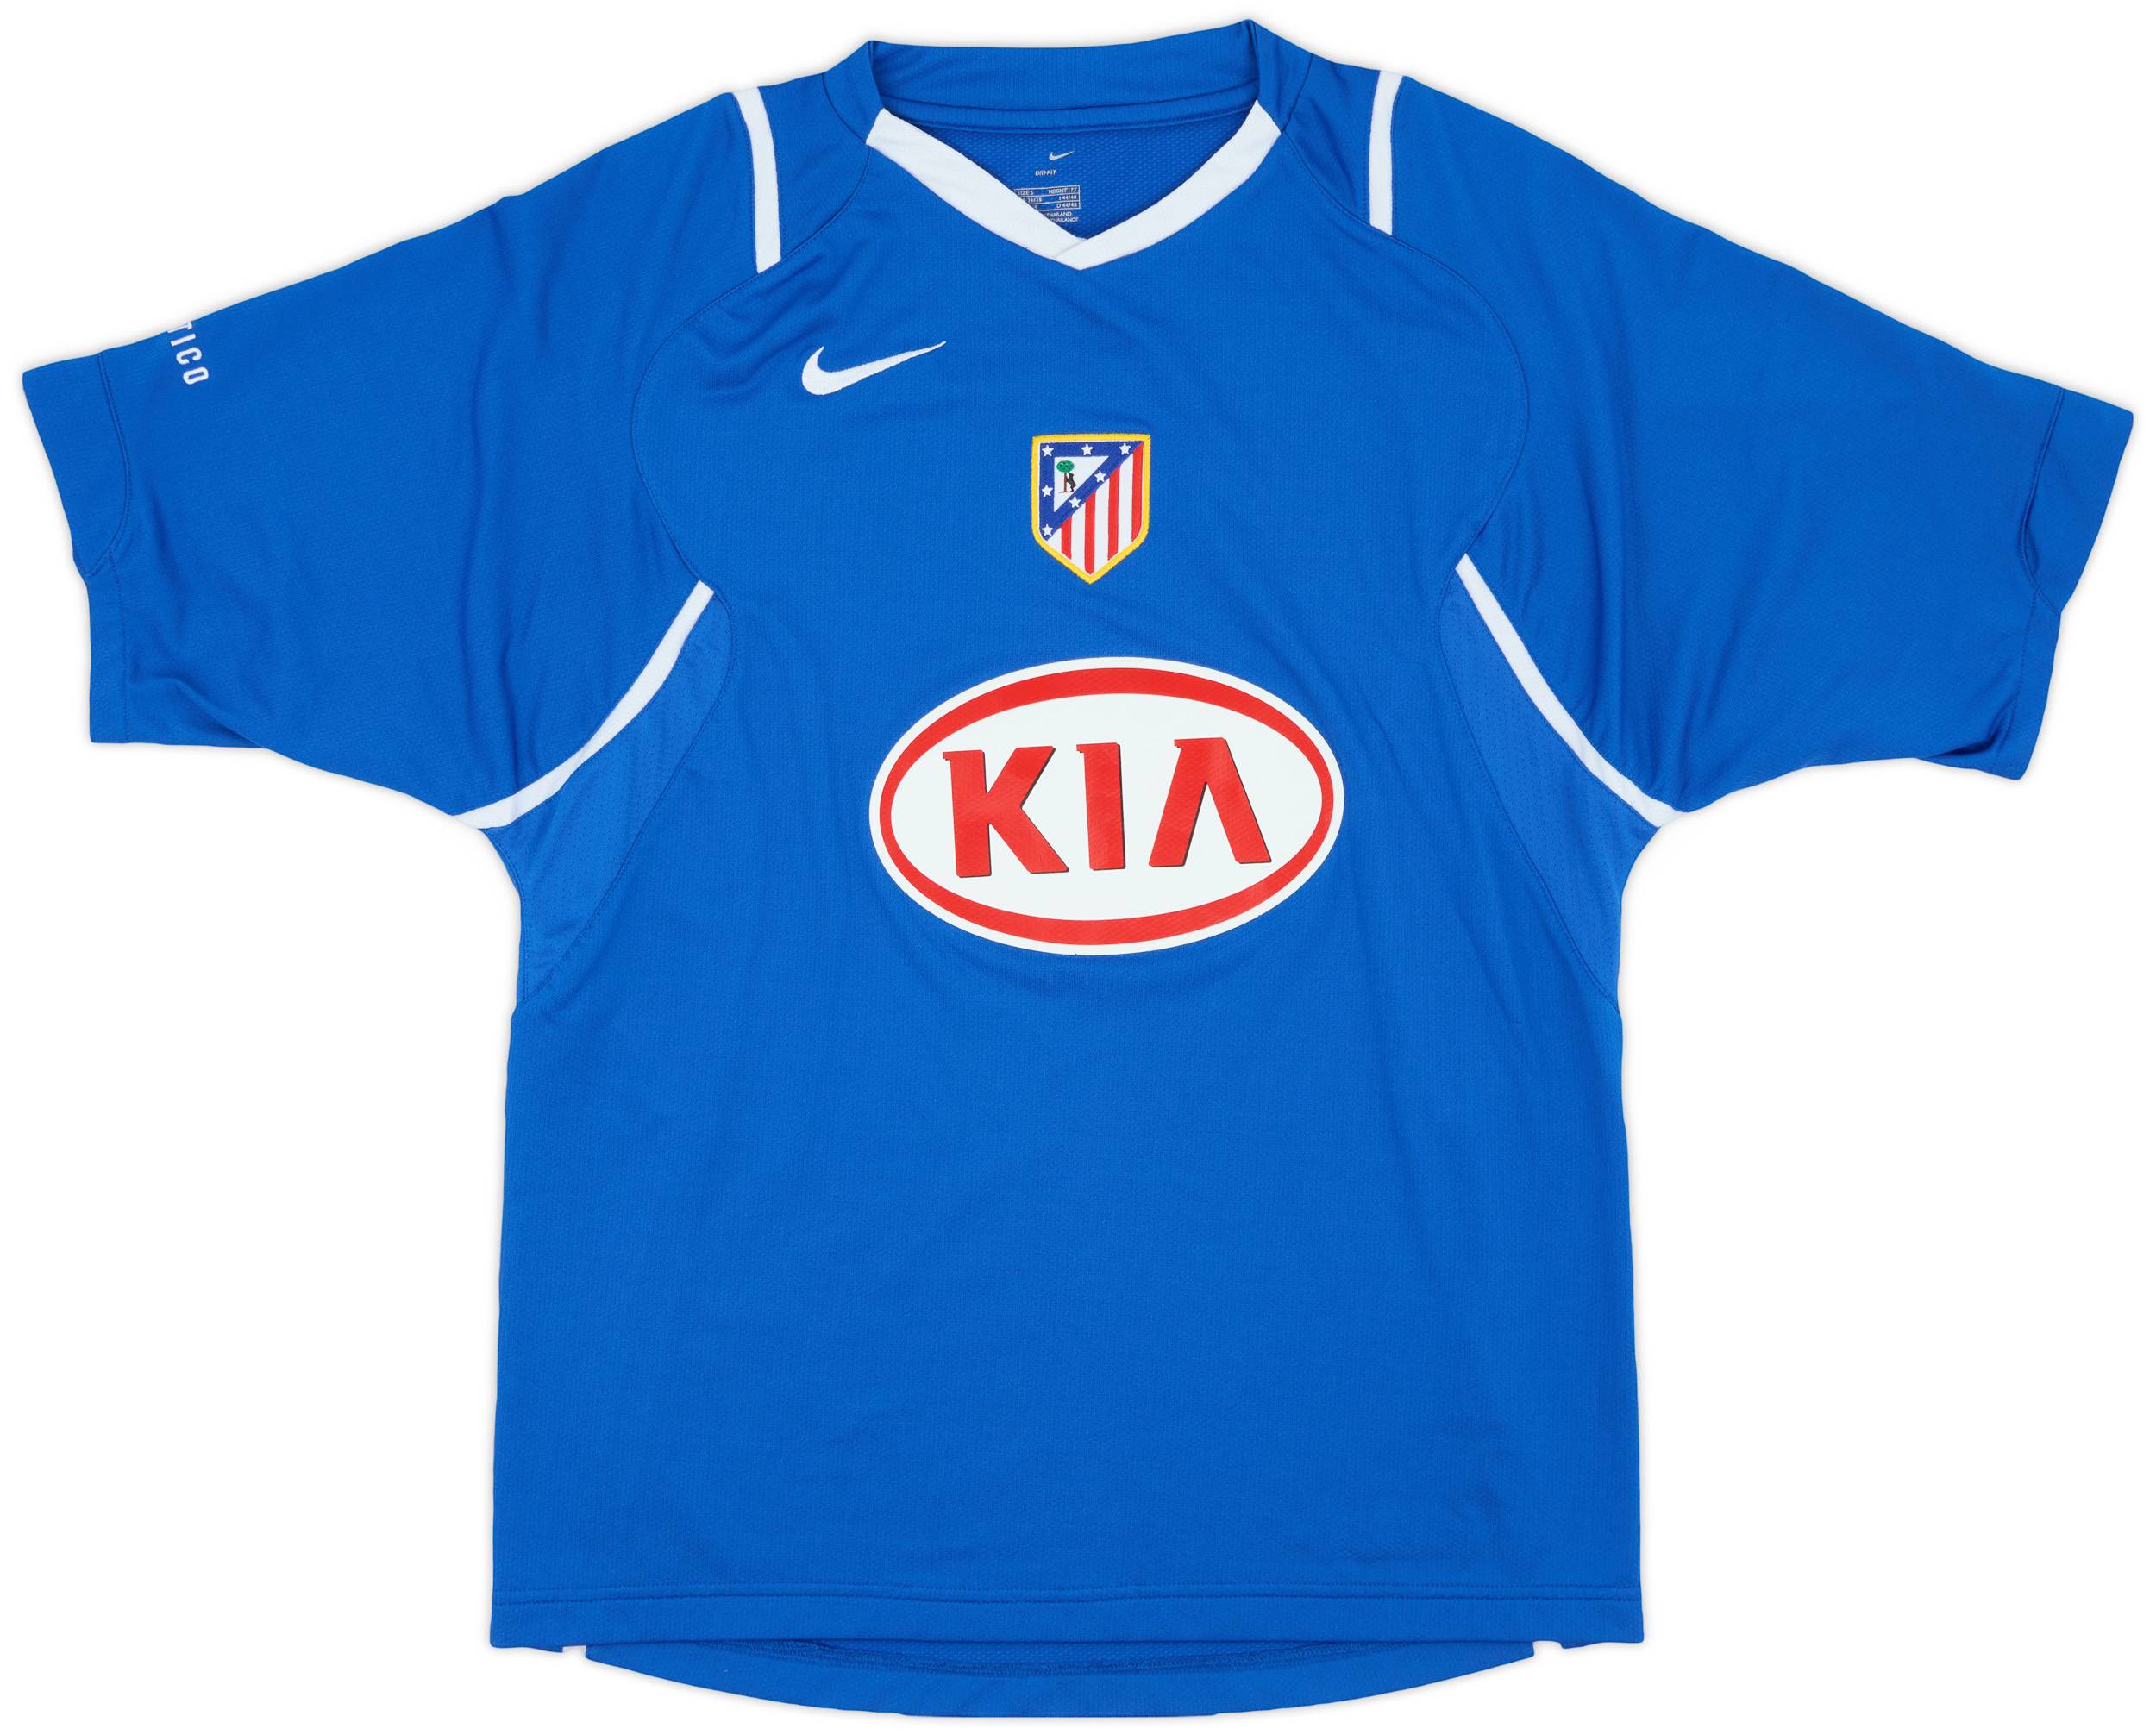 2006-07 Atletico Madrid Nike Training Shirt - 9/10 - (S)